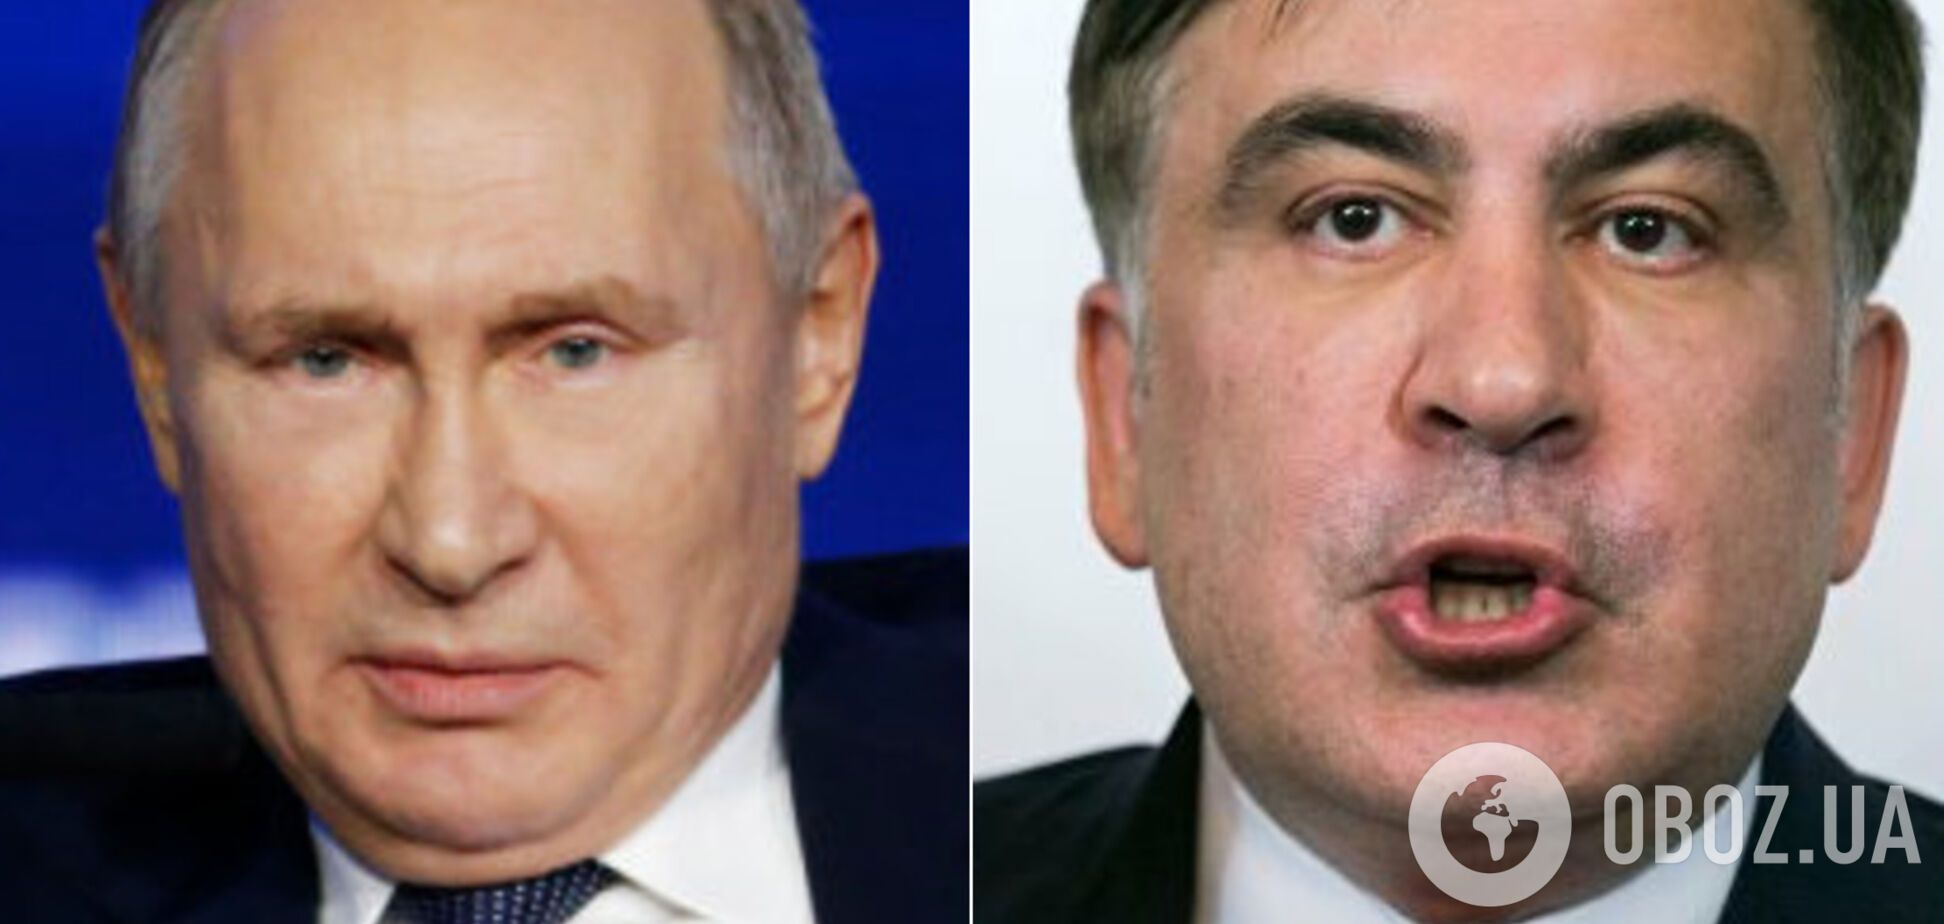 Путин обозвал Саакашвили 'мартовским котом' и отмахнулся от Грузии. Видео